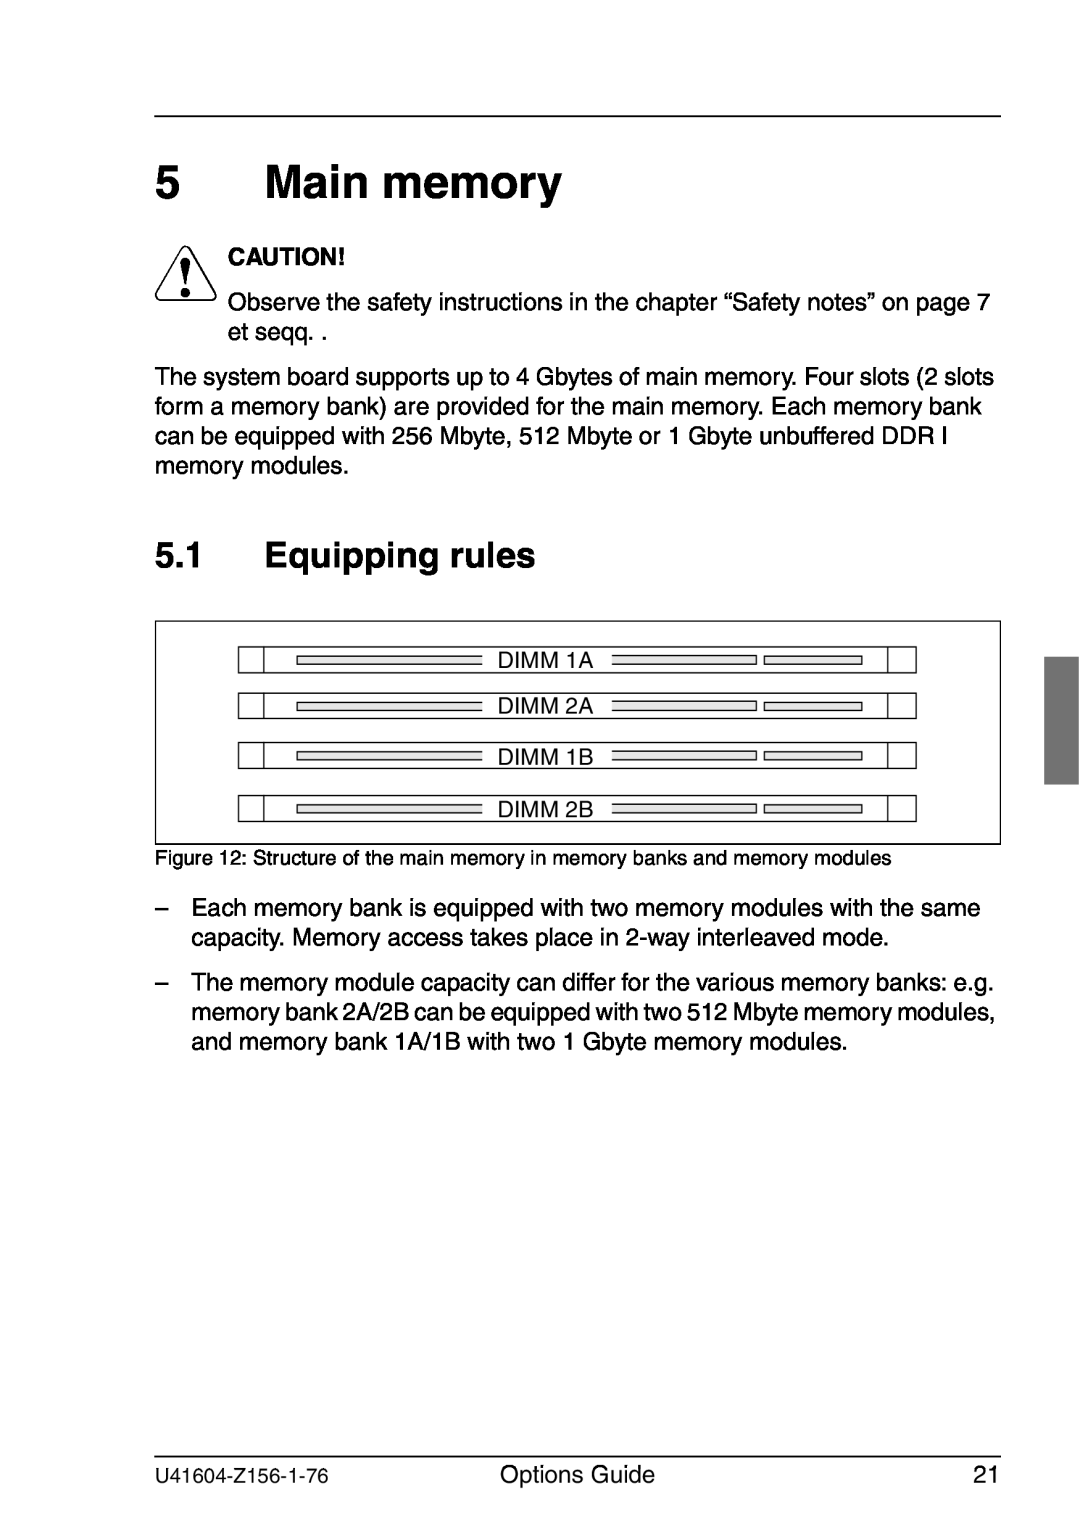 Fujitsu TX150 S3 manual Main memory, Equipping rules, V Caution 